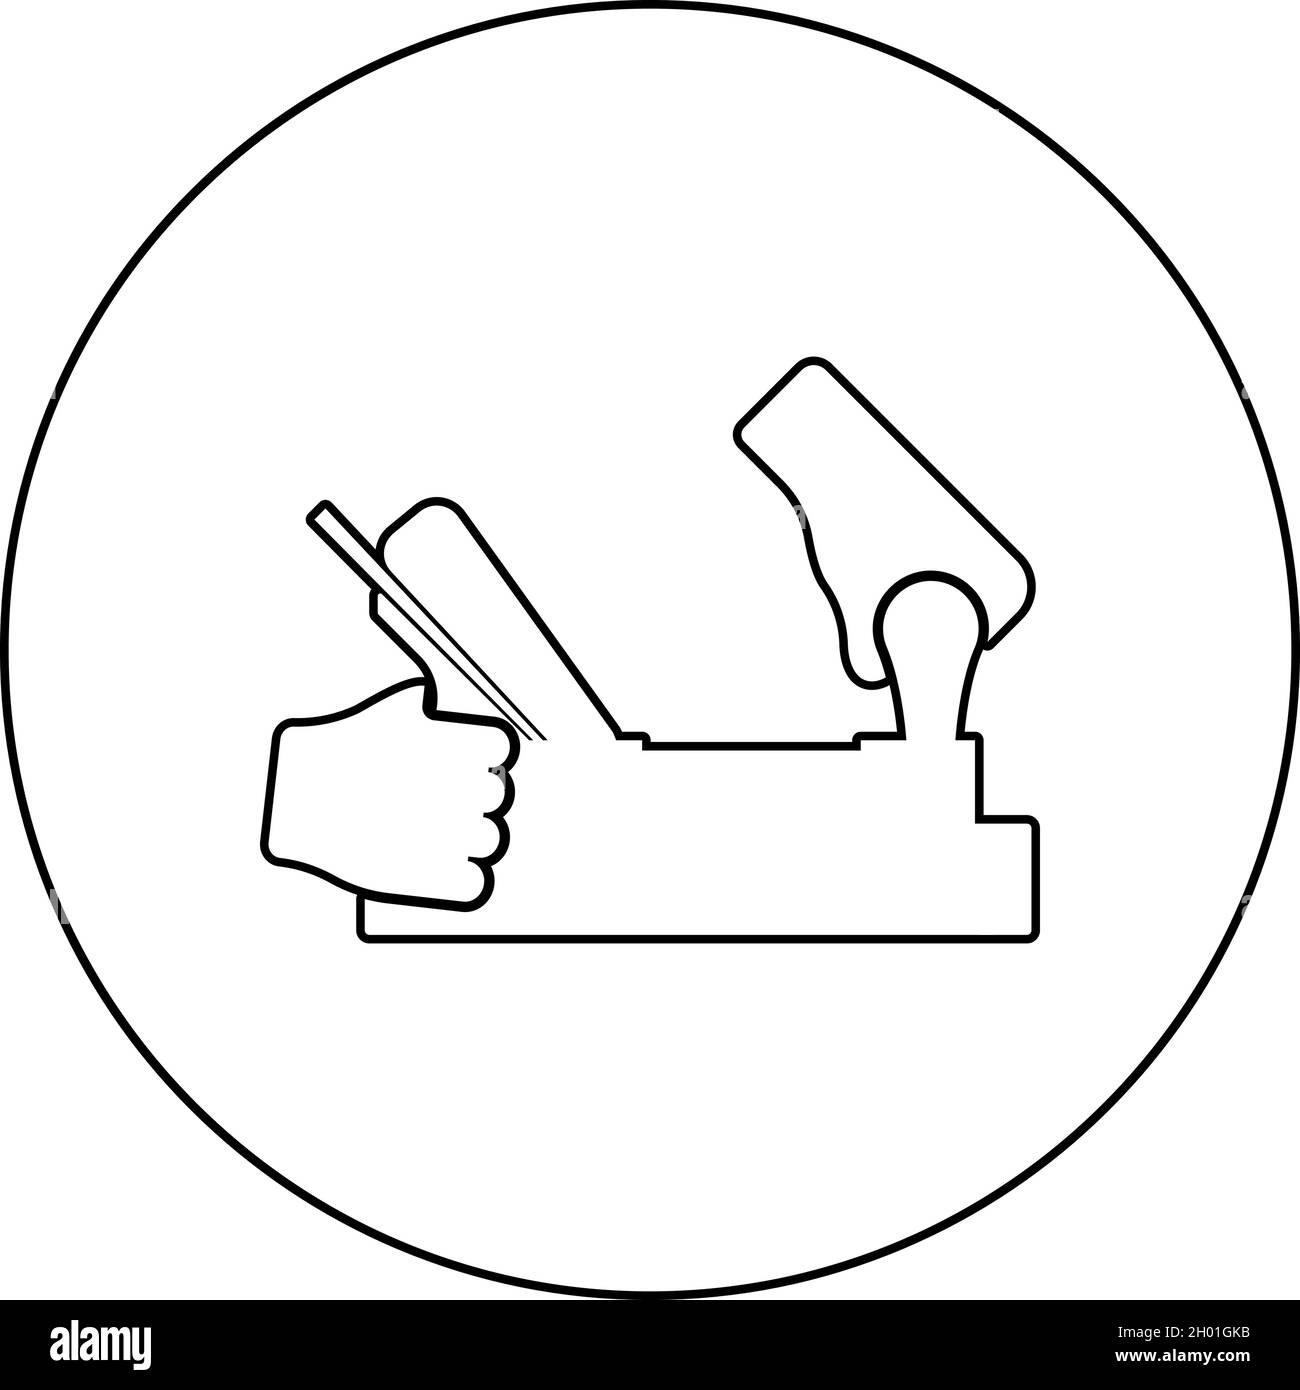 Outil de maintien du cric à jointer utilisez le bras avec l'instrument avec l'icône en bois dans le cercle rond de couleur noire illustration vectorielle style de contour solide Illustration de Vecteur